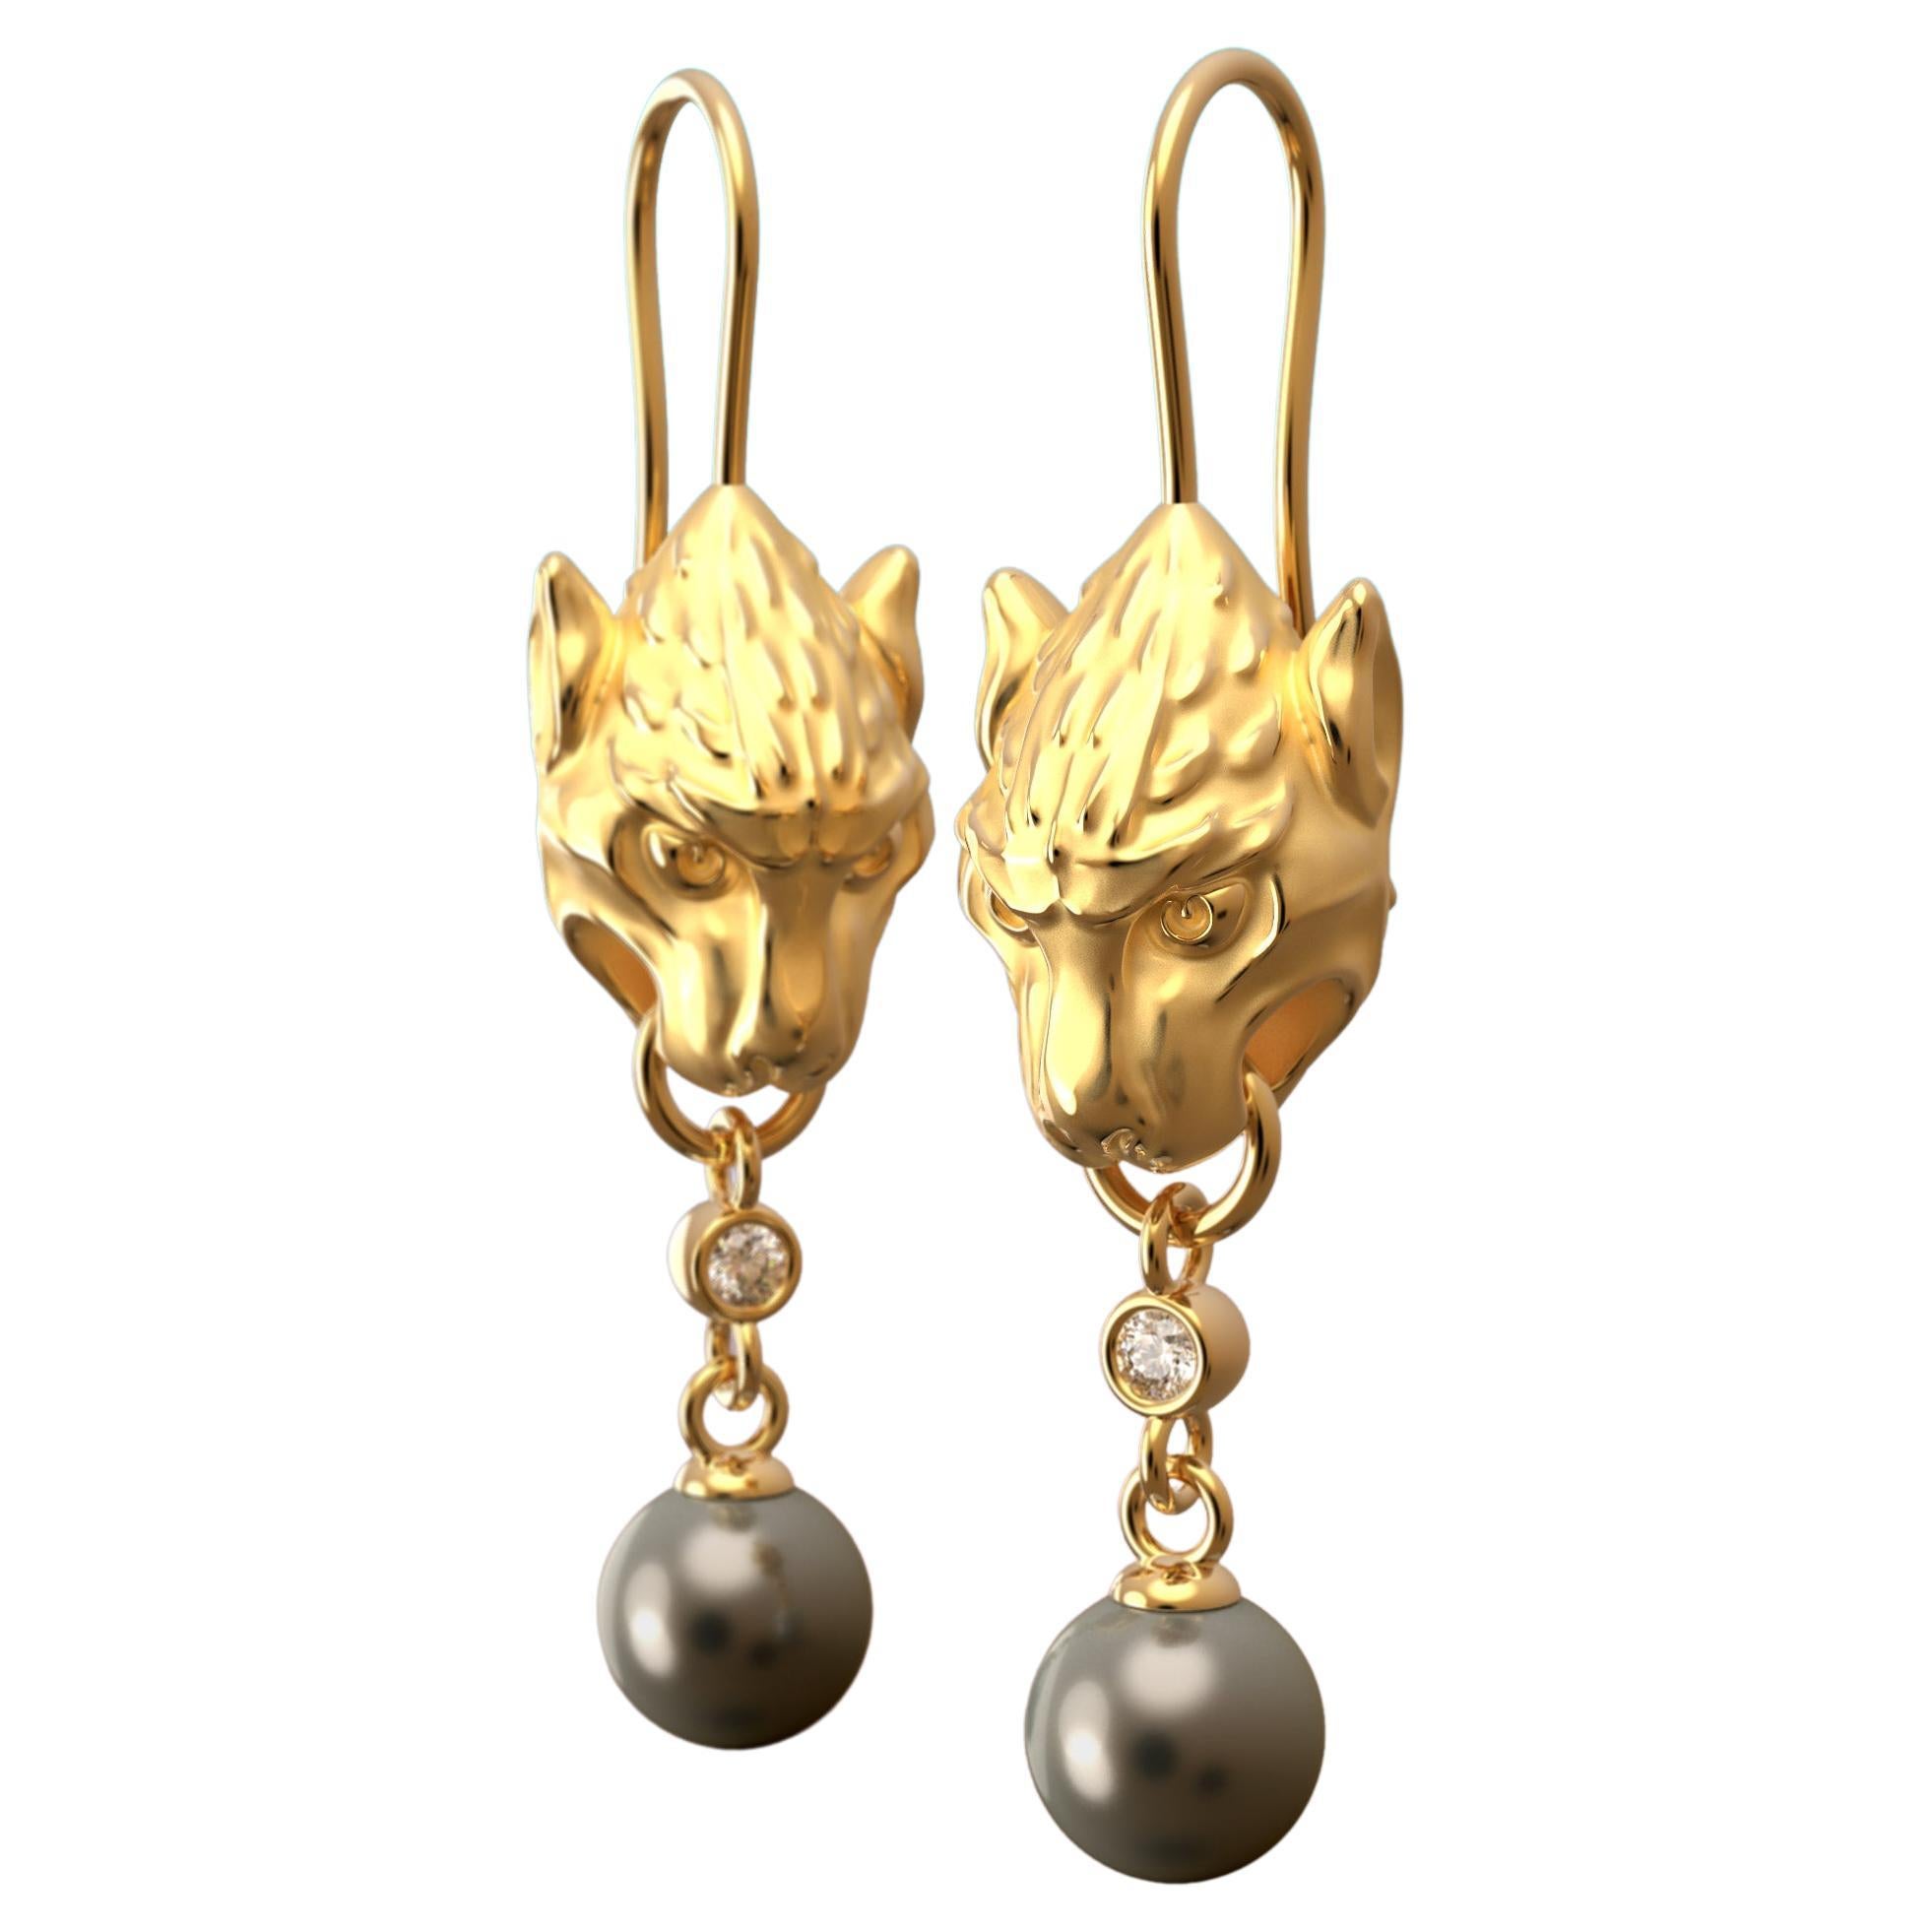  Ohrringe aus 14k Gold mit Perlen und Diamanten, gotische Gargoyle-Ohrringe, hergestellt in Italien